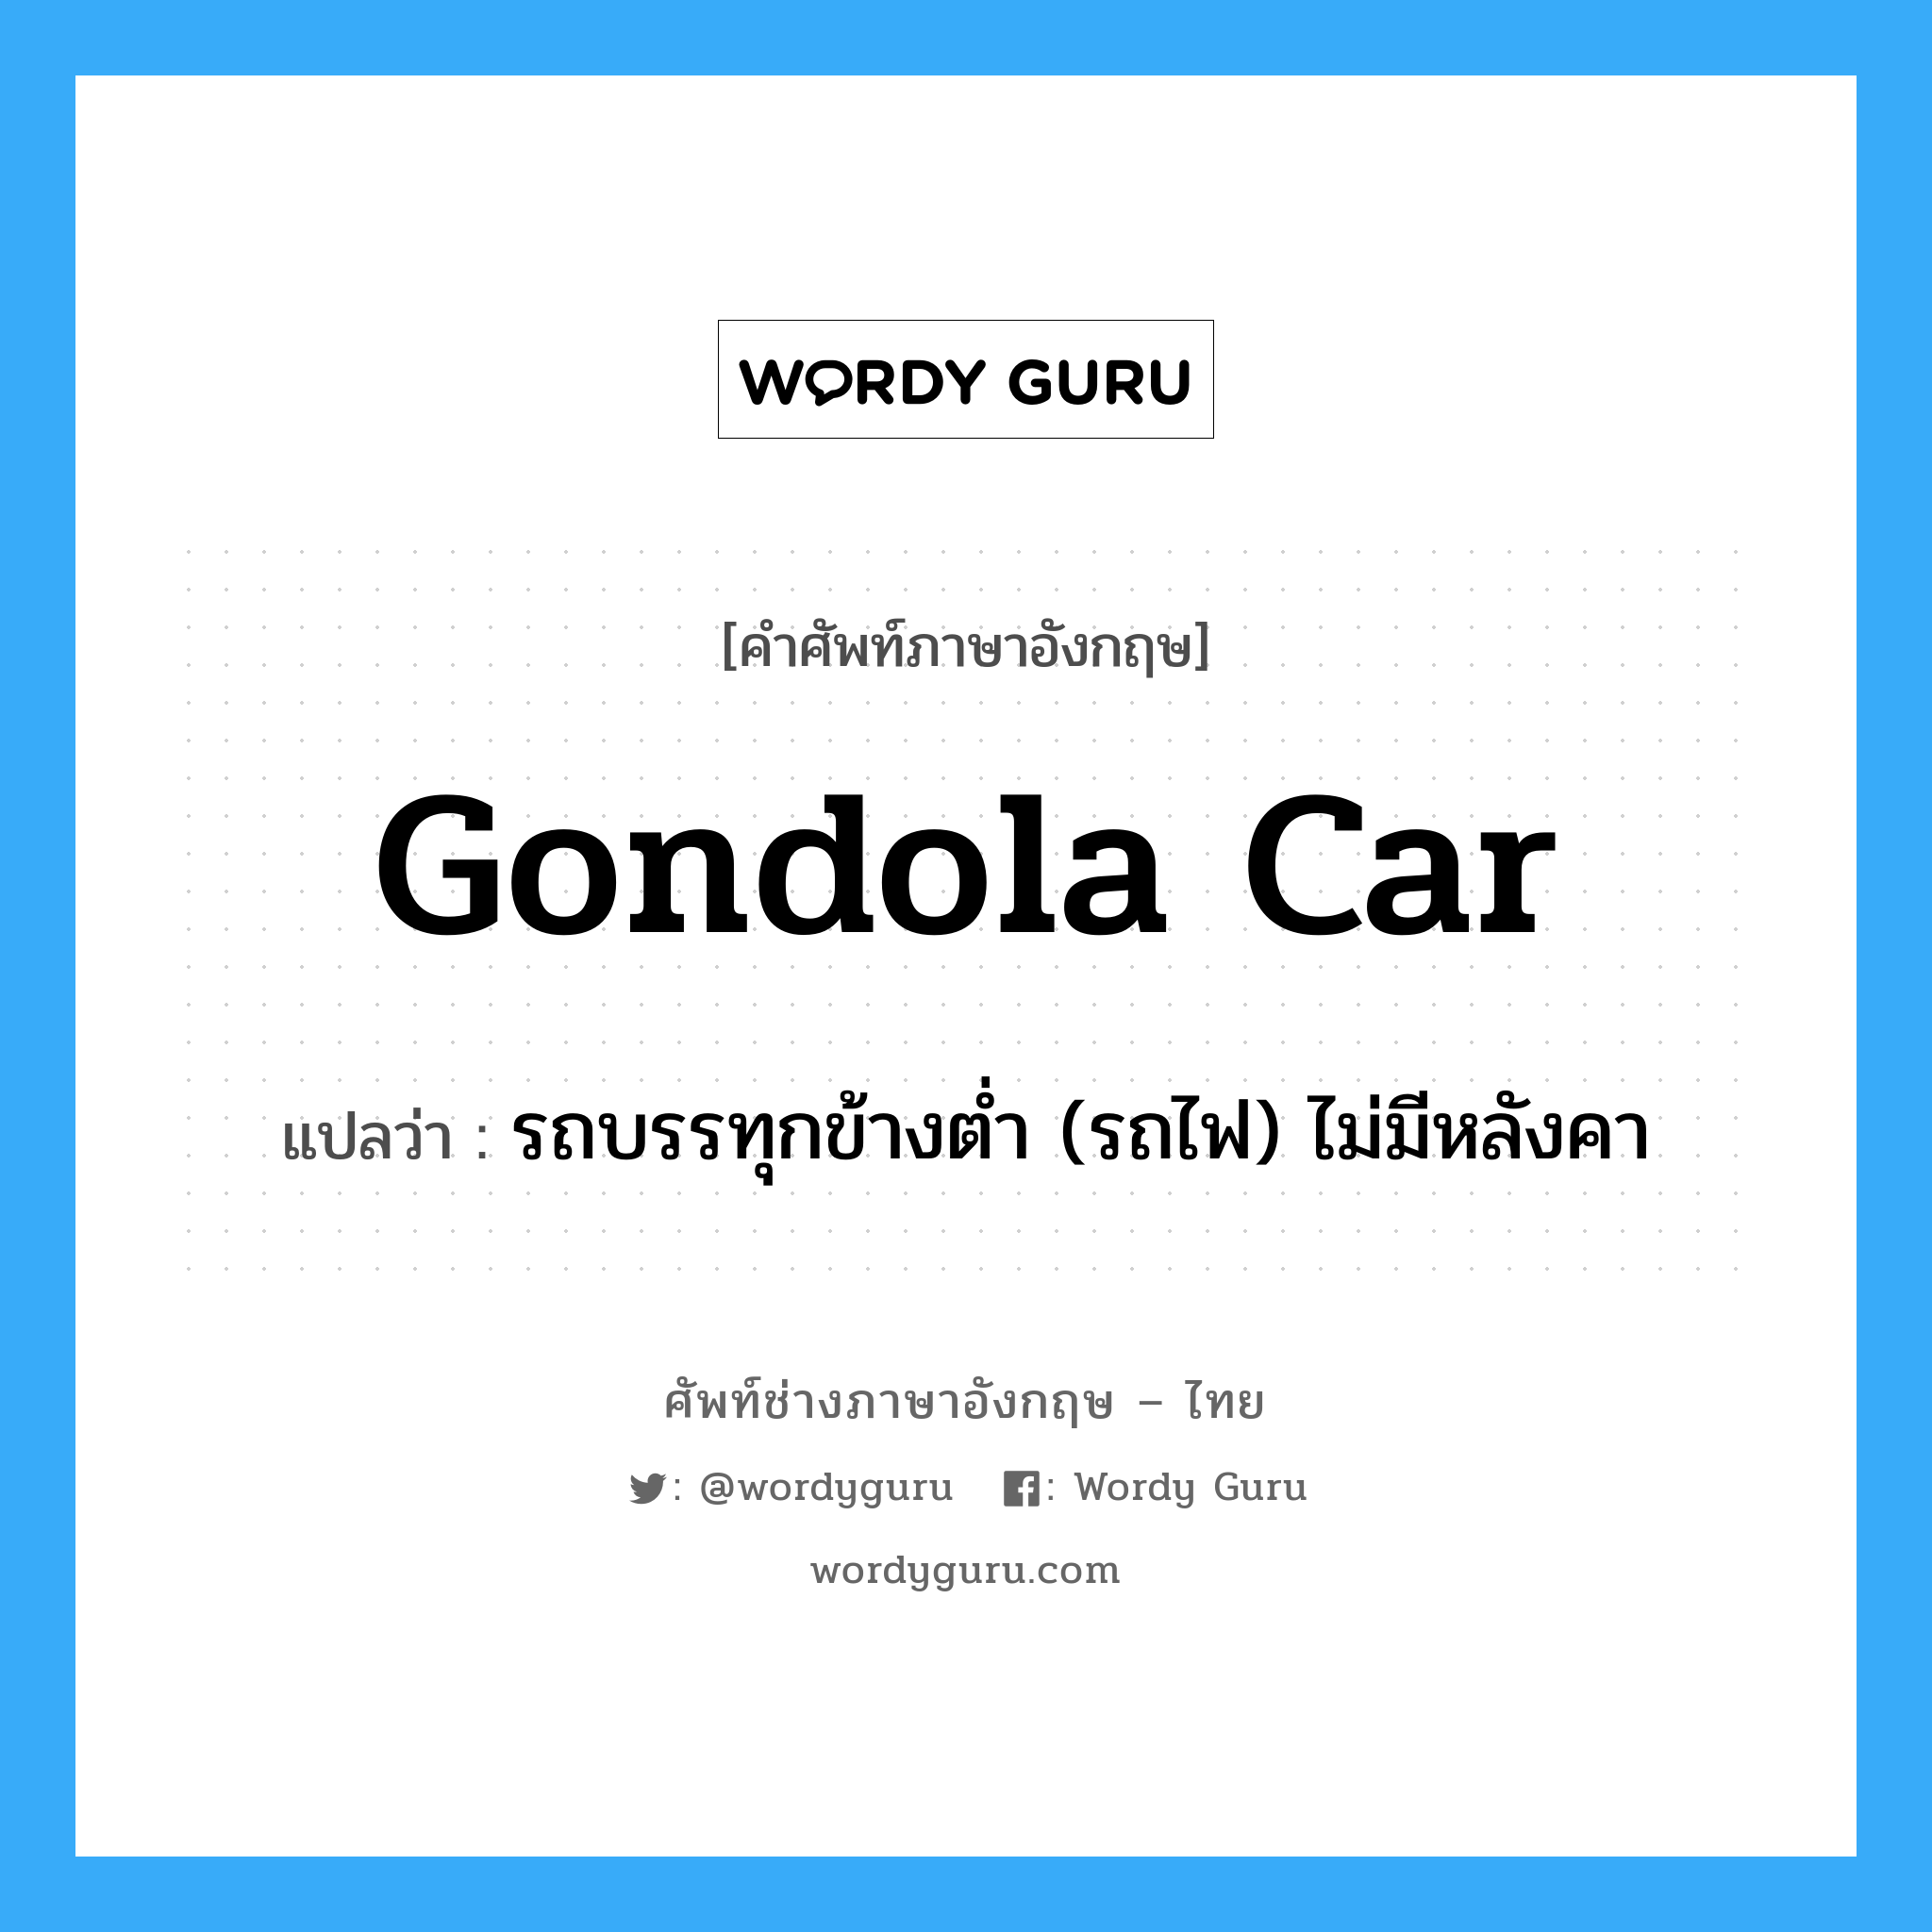 gondola car แปลว่า?, คำศัพท์ช่างภาษาอังกฤษ - ไทย gondola car คำศัพท์ภาษาอังกฤษ gondola car แปลว่า รถบรรทุกข้างต่ำ (รถไฟ) ไม่มีหลังคา